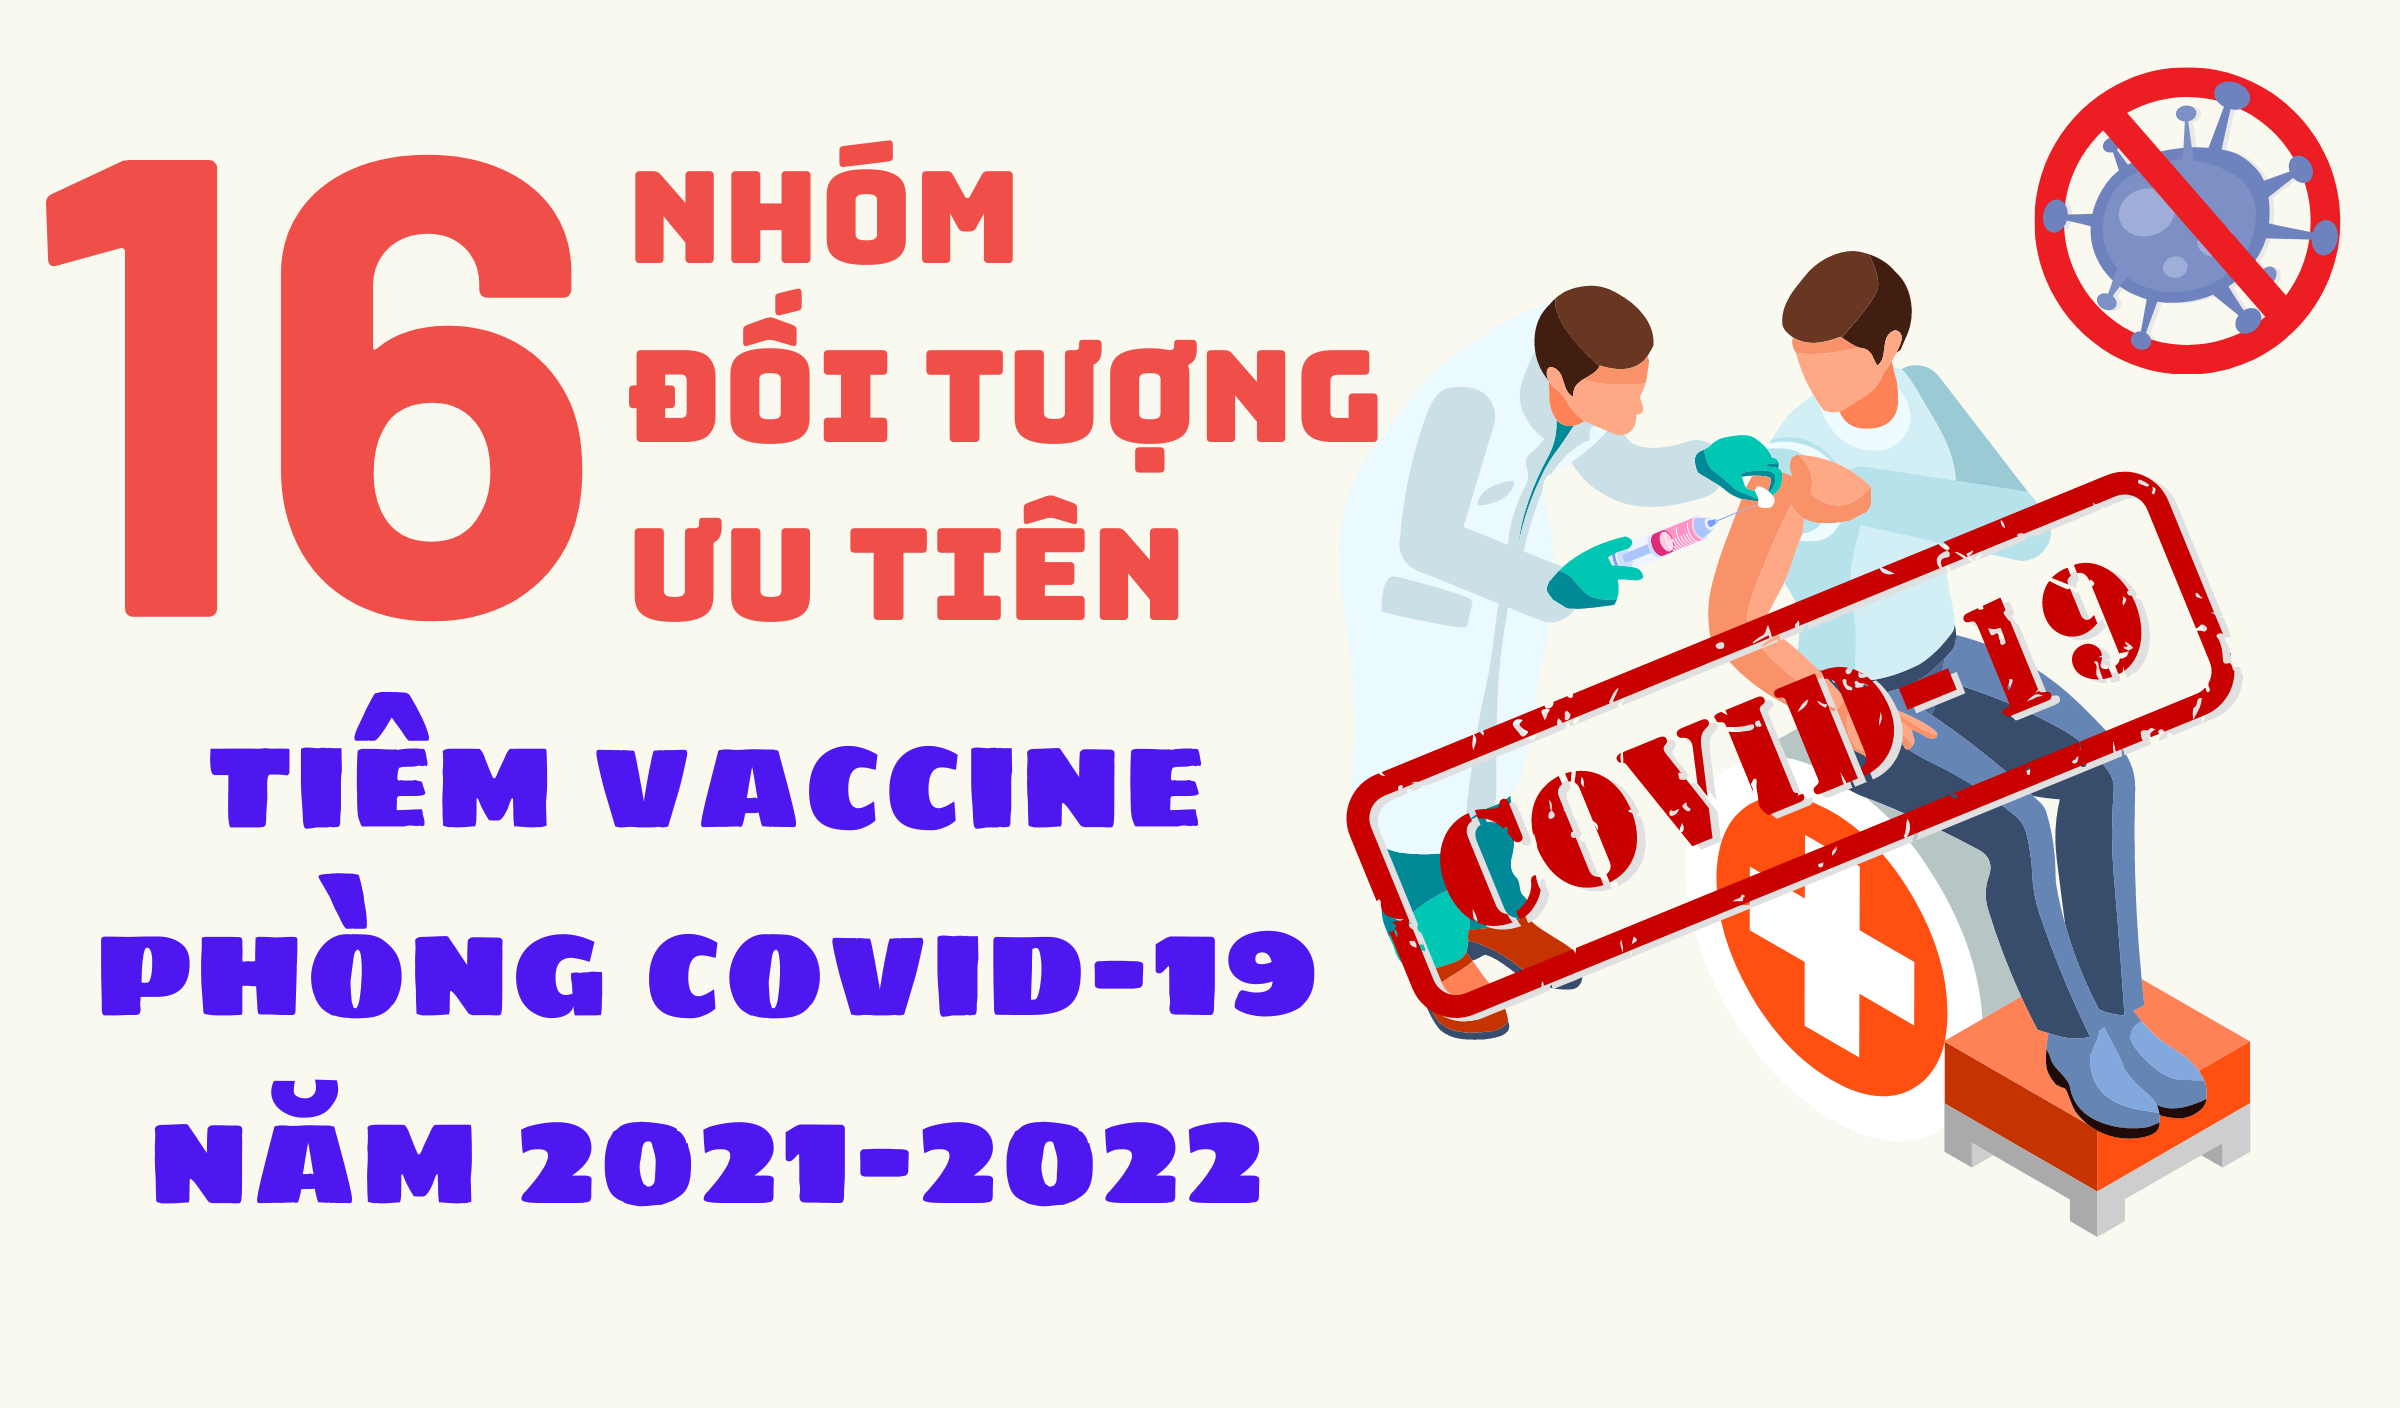 [Infographics] 16 nhóm đối tượng ưu tiên tiêm vaccine phòng Covid-19 năm 2021-2022